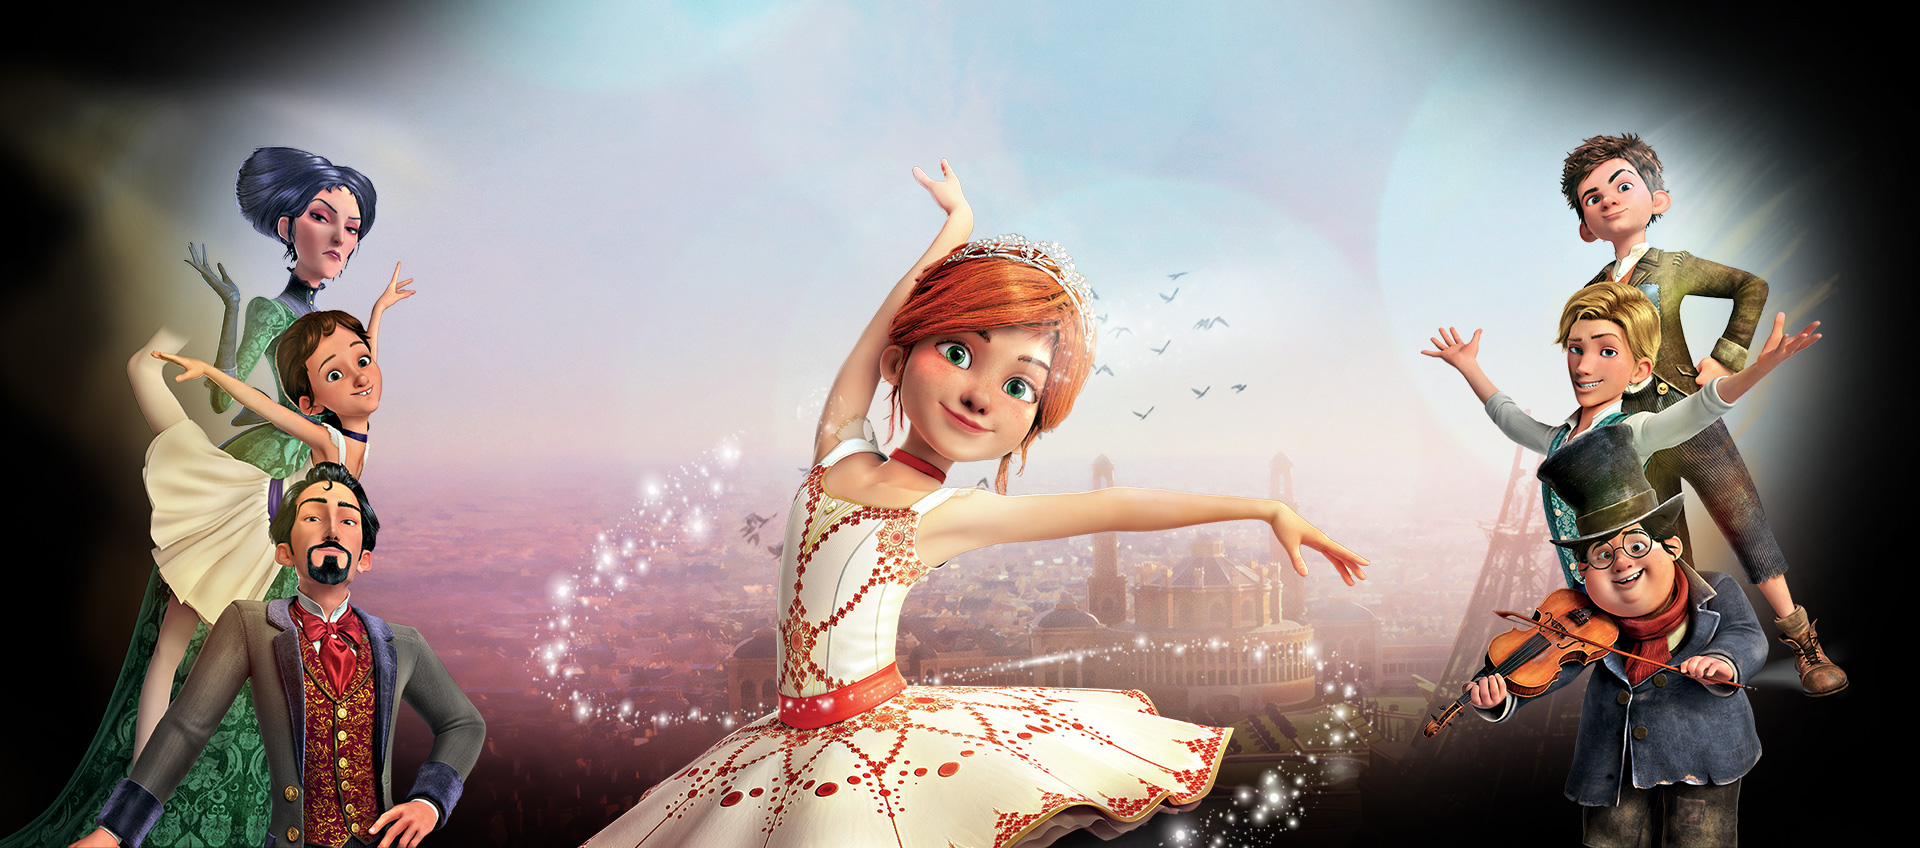 Балерина - красивая большая картинка с главными героями - Мультфильм  Балерина - YouLoveIt.ru